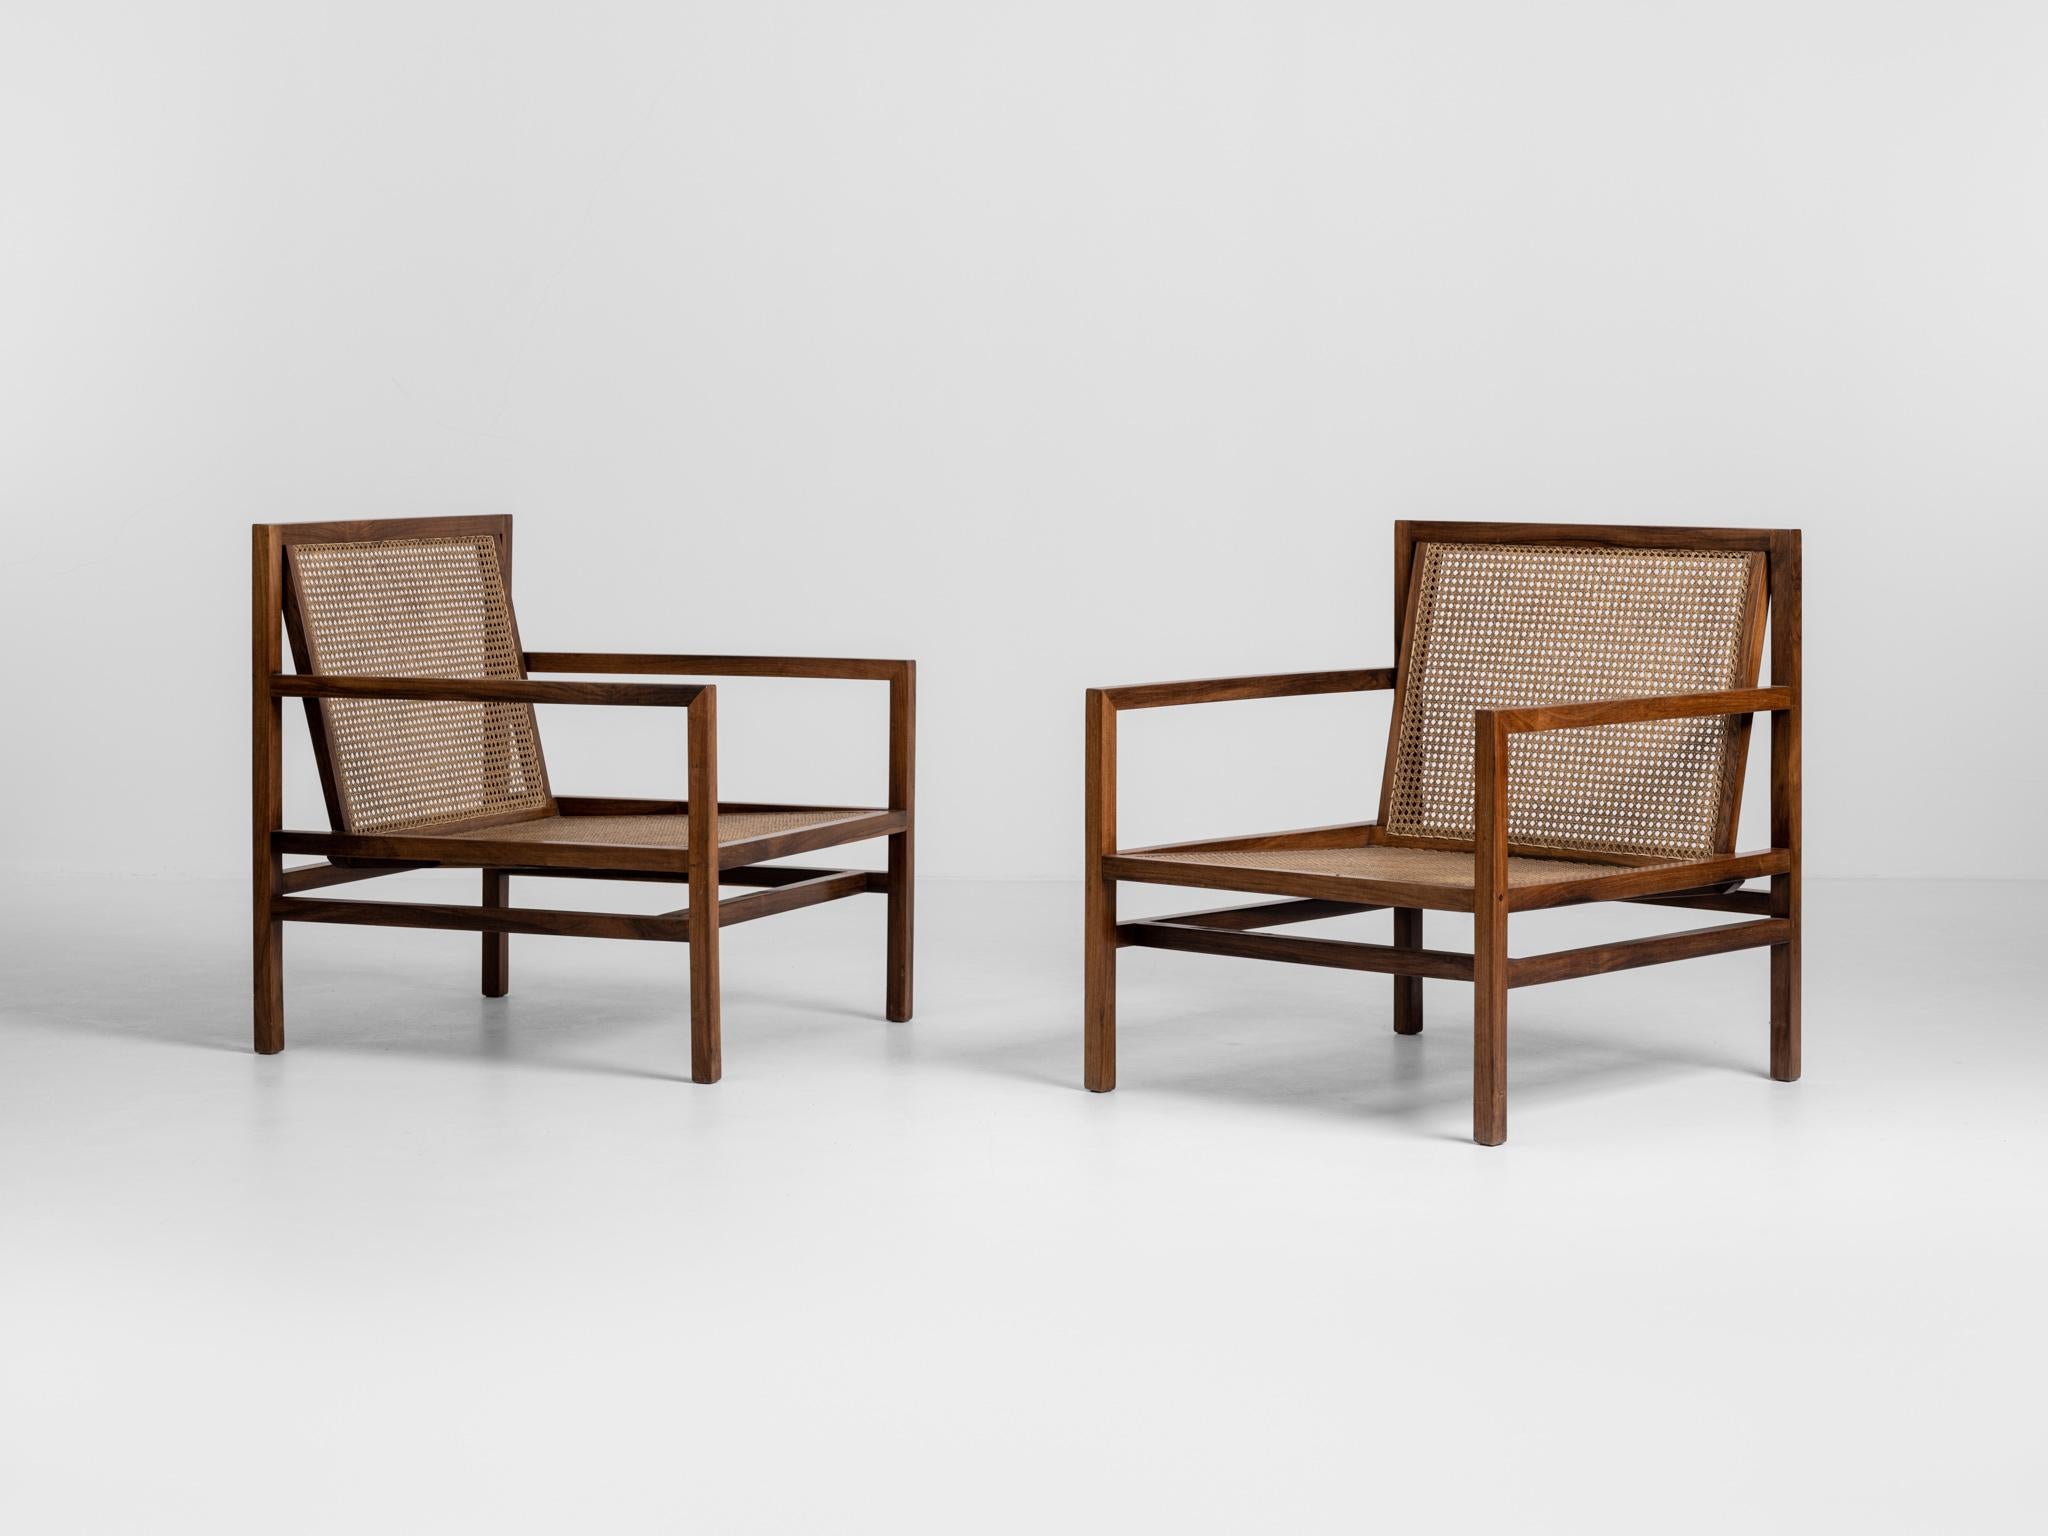 Ein Paar brasilianische Modern Lounge Chairs, entworfen von Joachim Tenreiro. Die Strukturen der Stühle sind aus massivem Palisanderholz mit Sitzflächen und Rückenlehnen aus Schilfrohr.

Joaquim Tenreiro (1906-1992) gilt als 